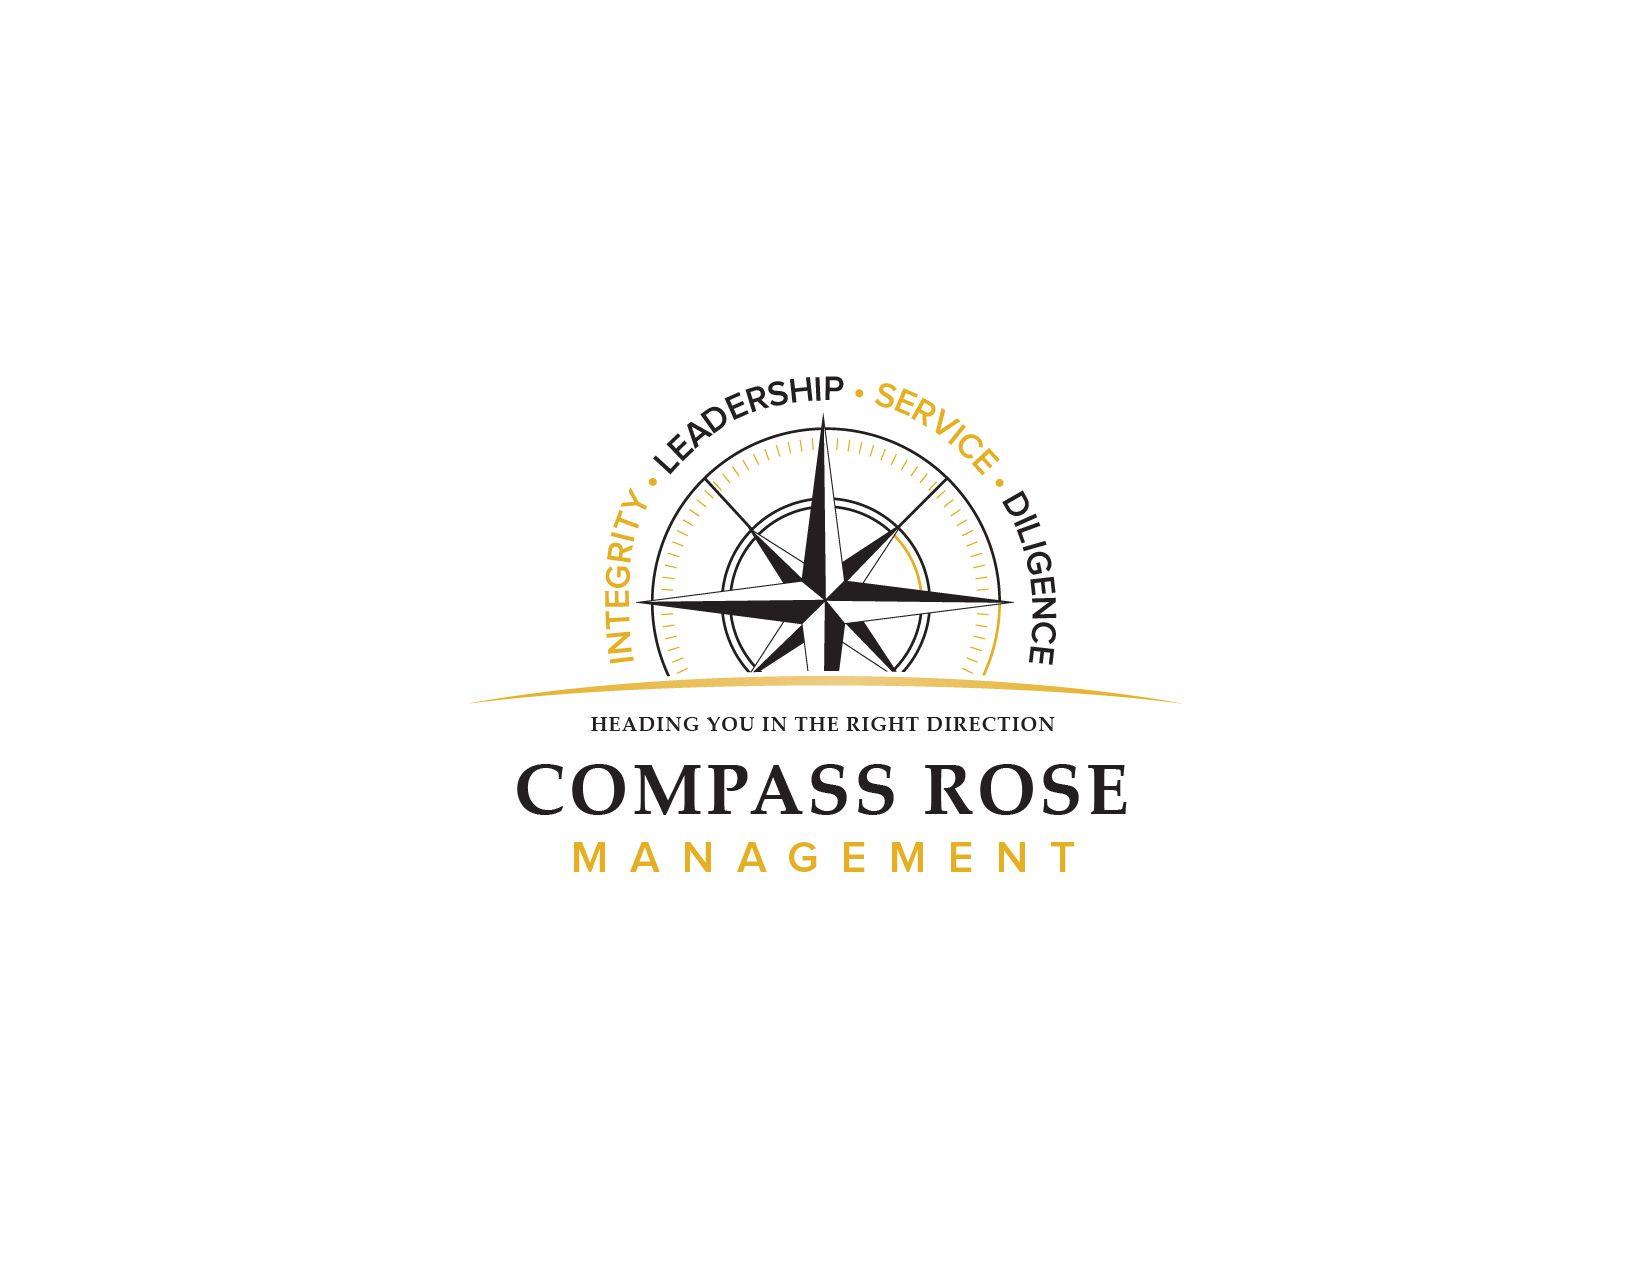 Compass Rose Logo - DesignContest Rose Management Compass Rose Management